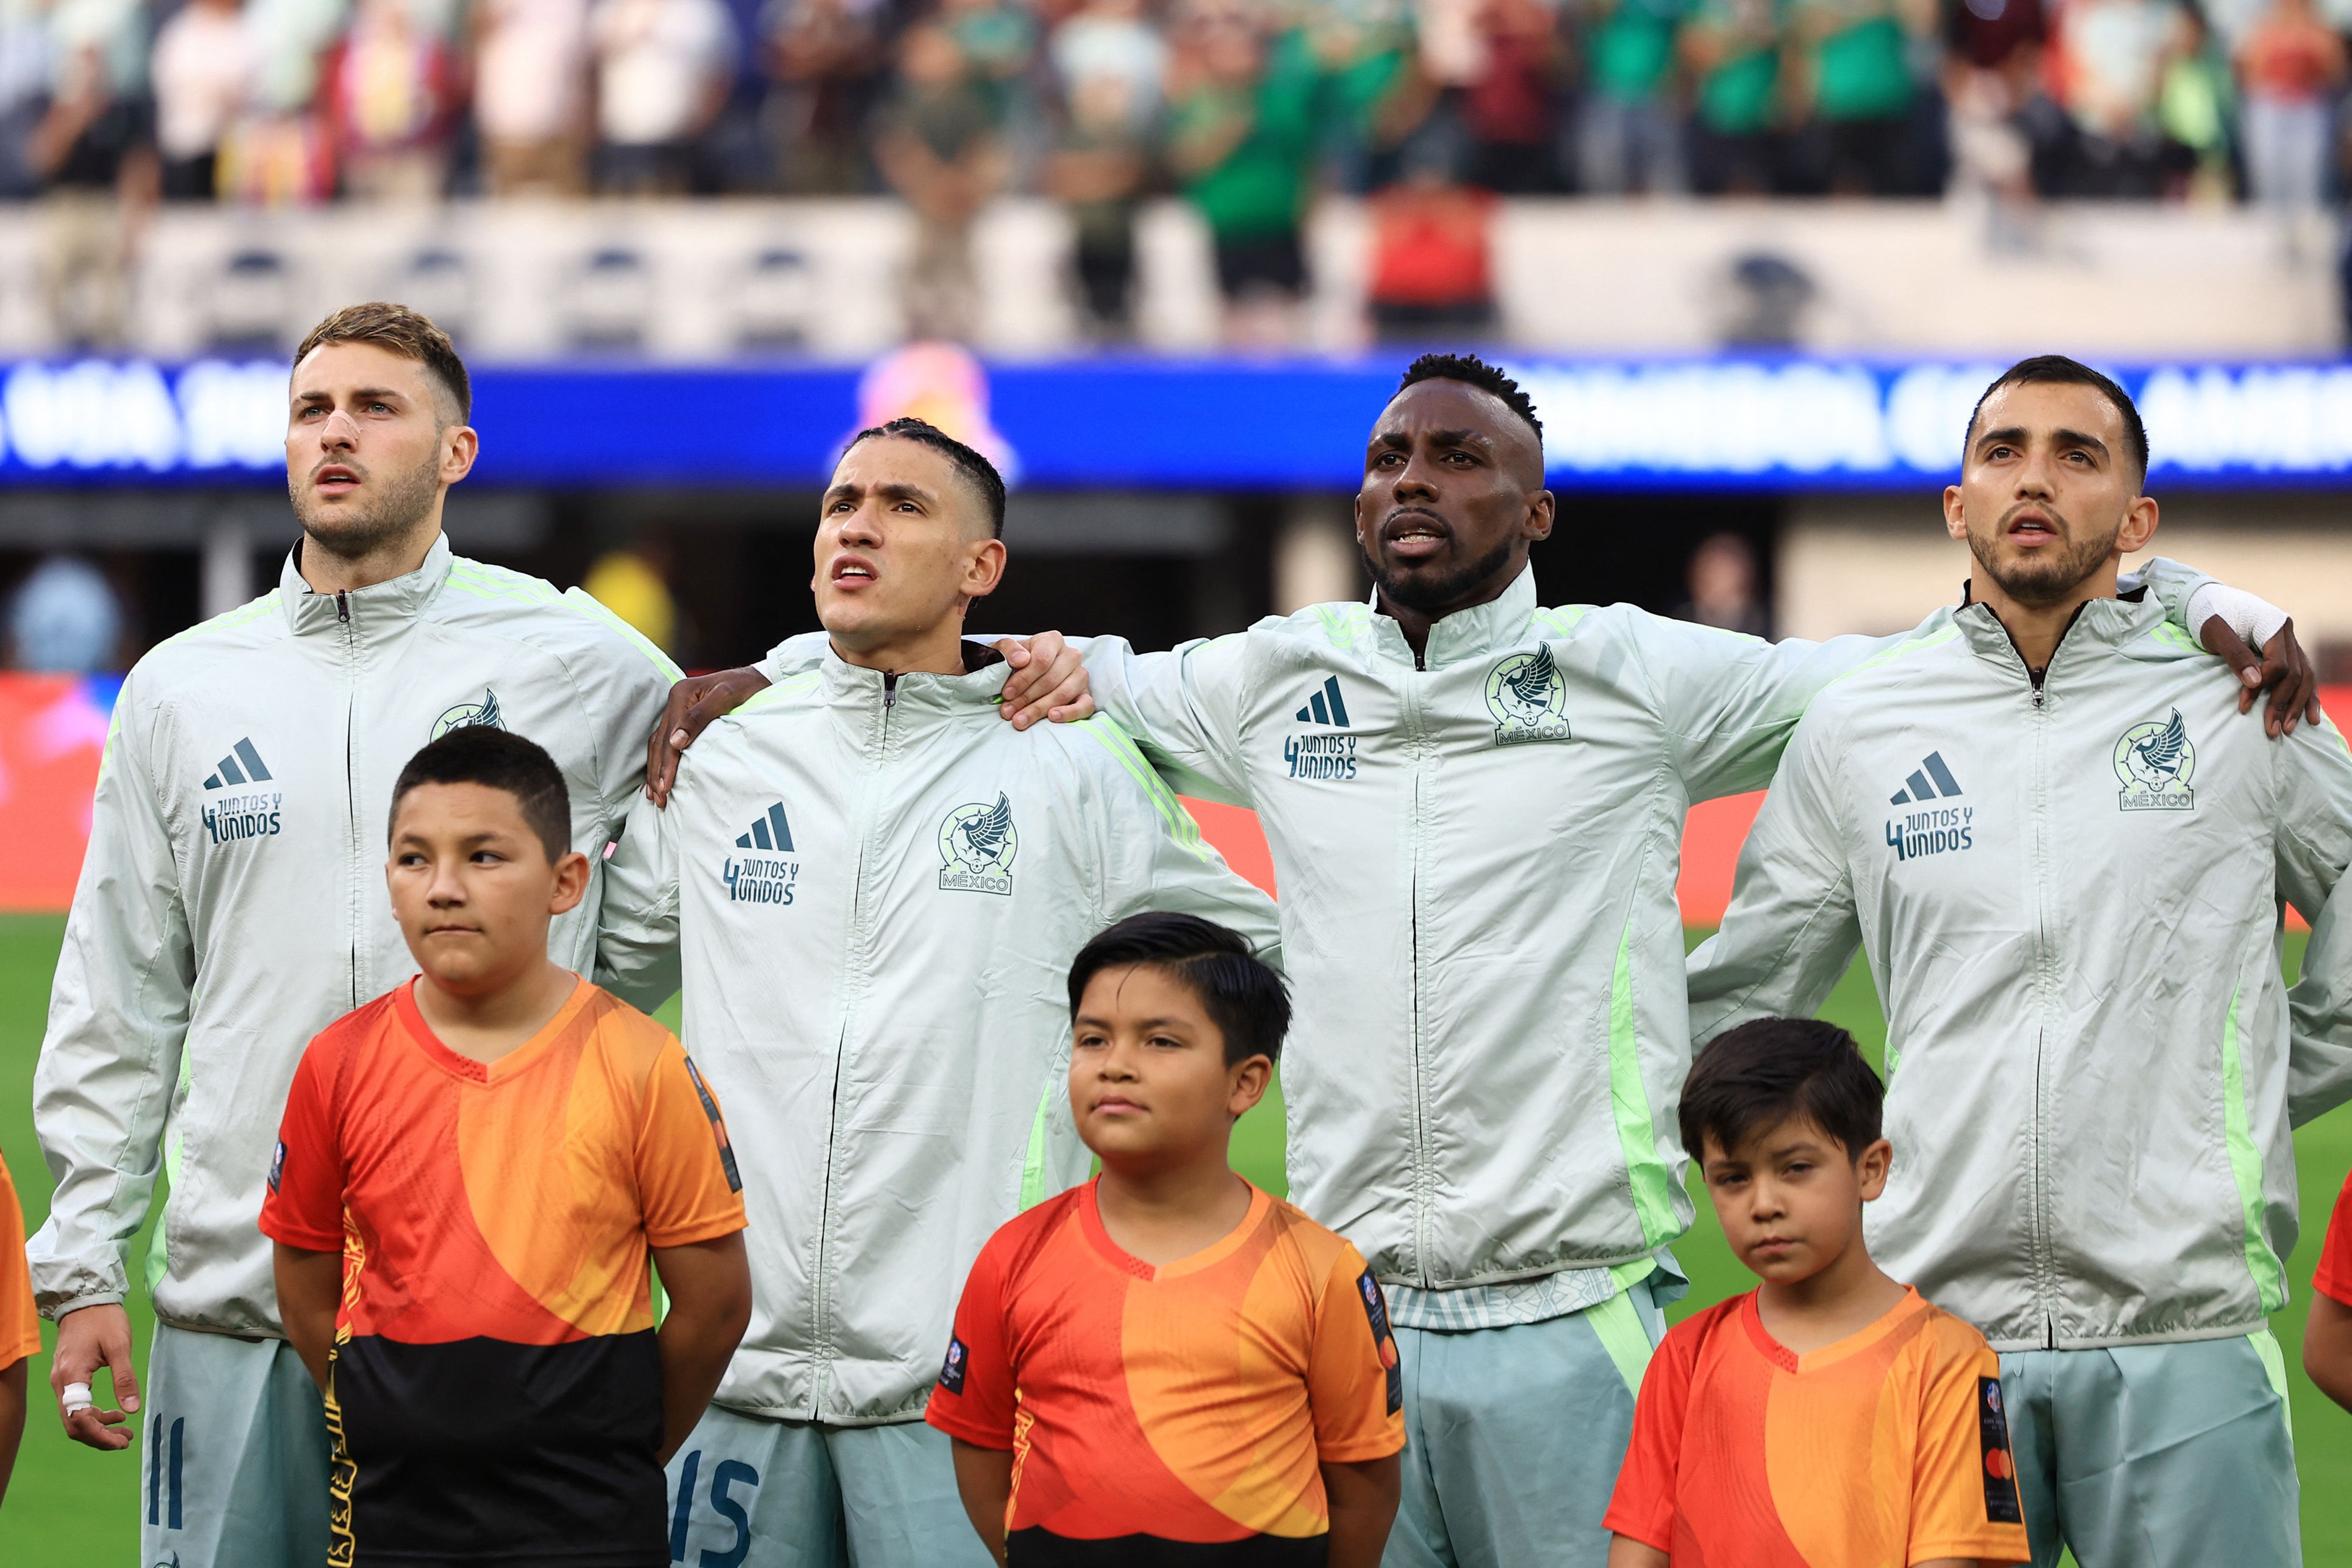 La selección mexicana entonando su himno previo al partido que les dejaría en la cuerda floja.